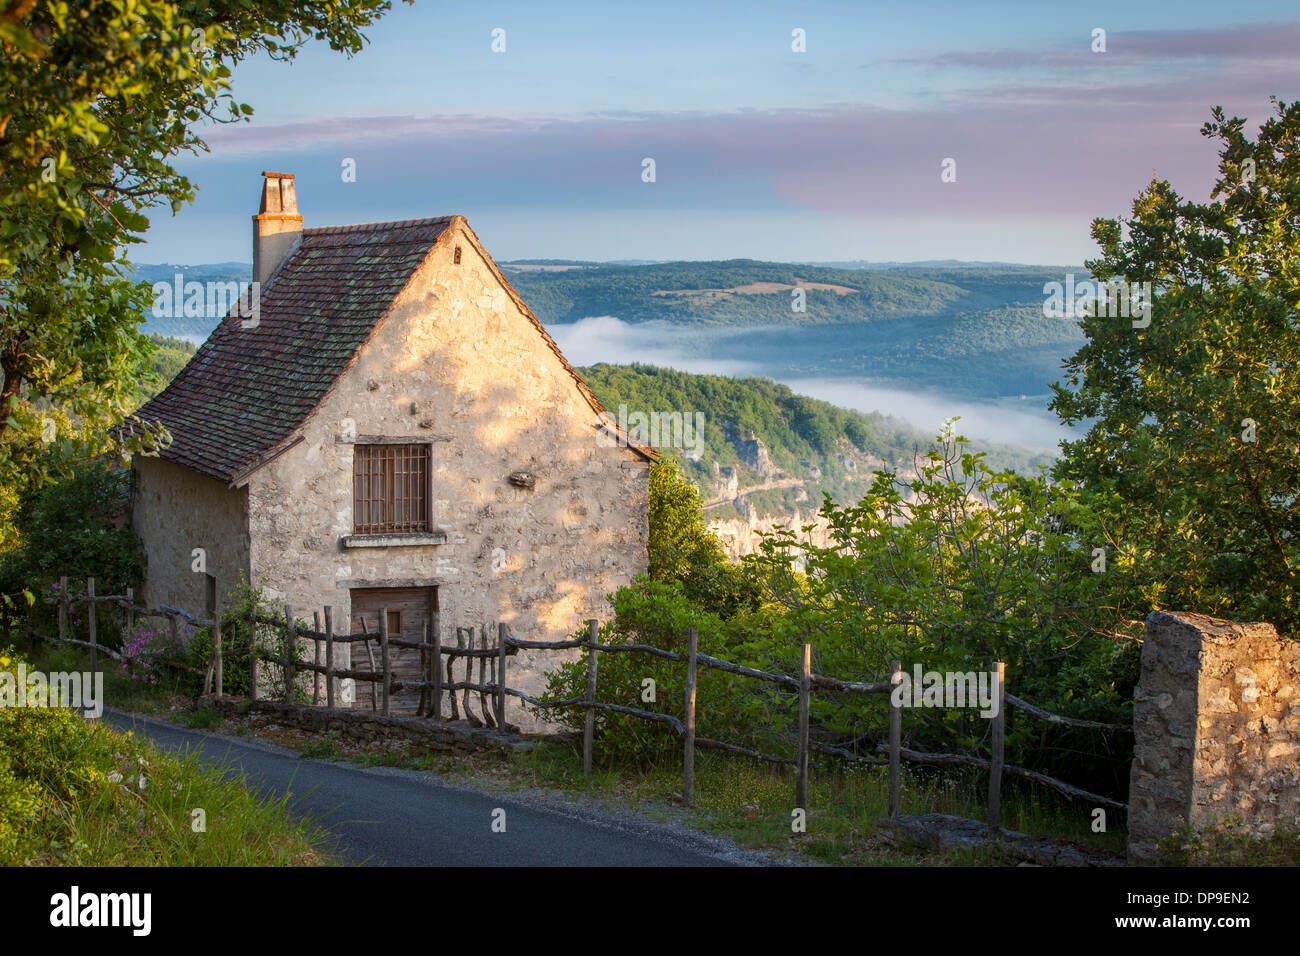 Ferienhaus oberhalb der Lot-Tal in der Nähe von Saint Cirq Lapopie, Royal, Frankreich Stockfoto